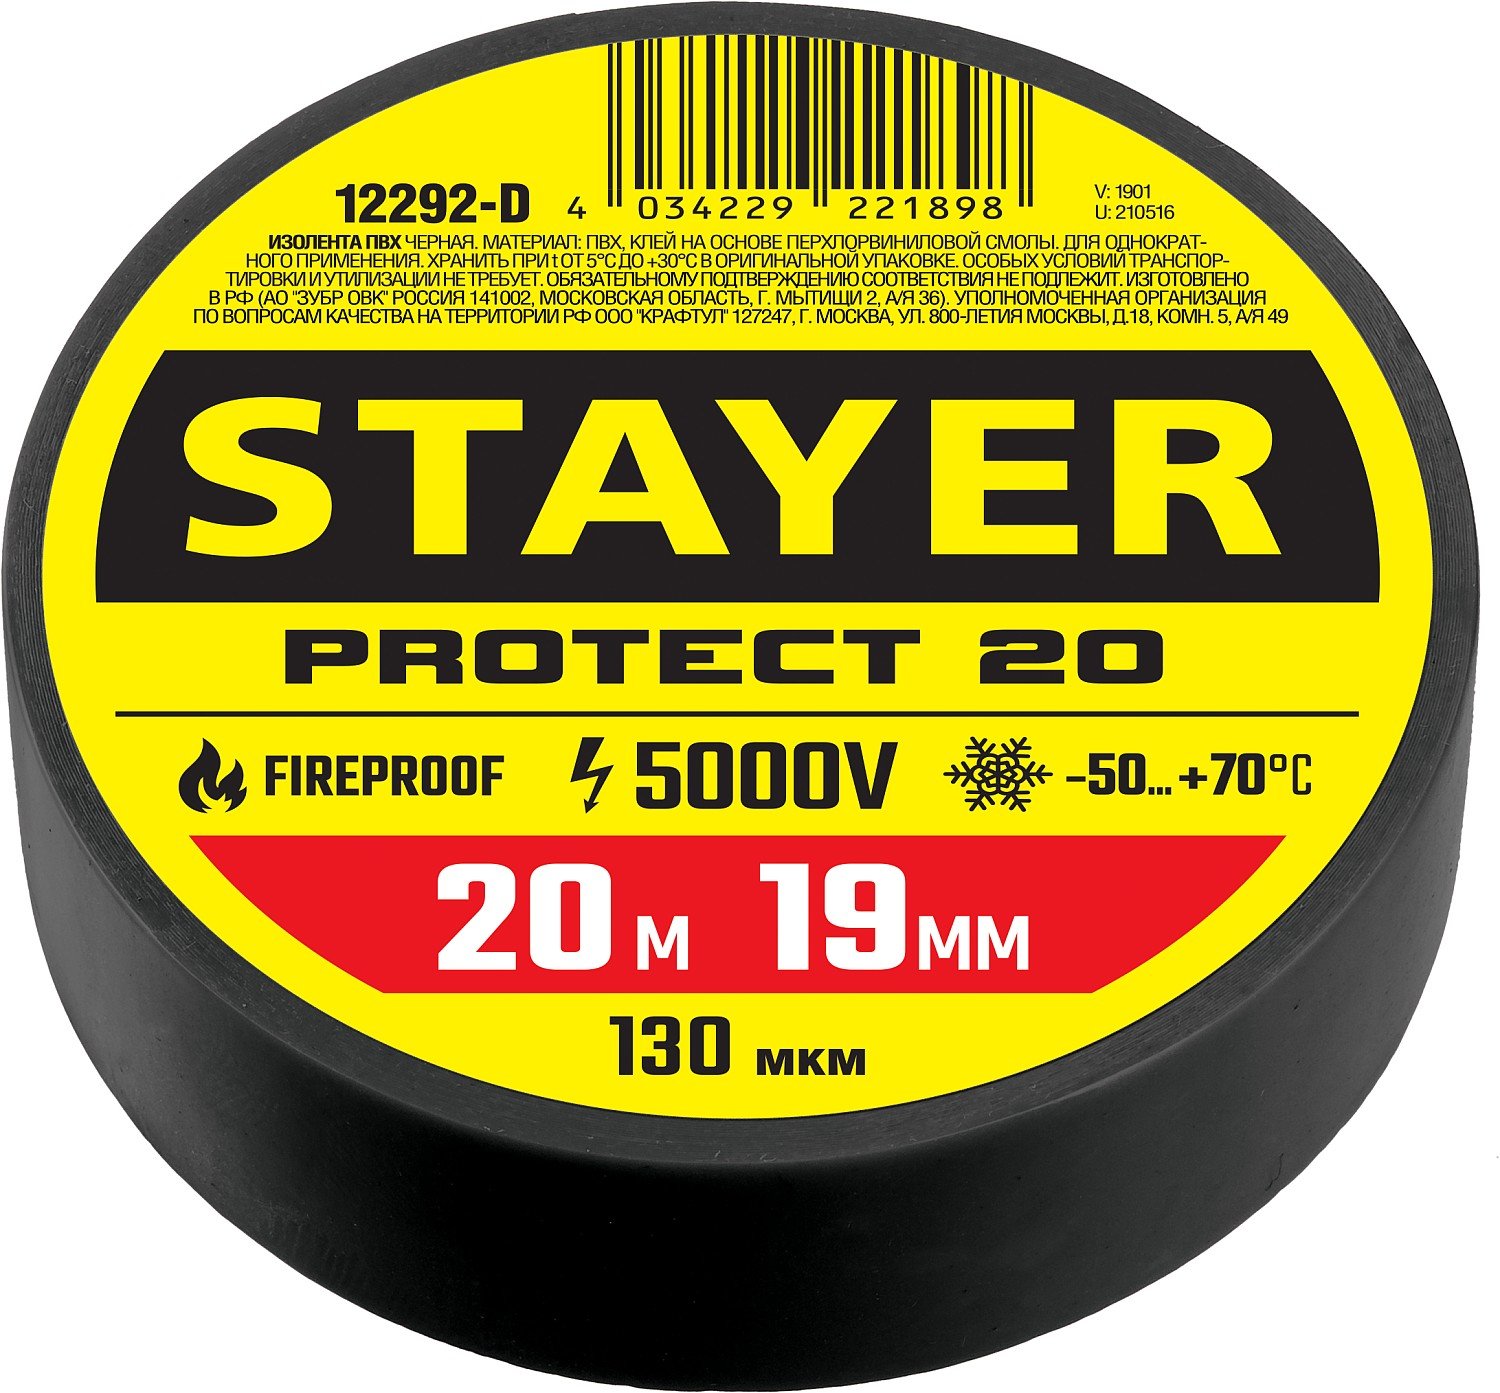 Изоляционная лента пвх STAYER Protect-20 19 мм х 20 м черная (12292-D)